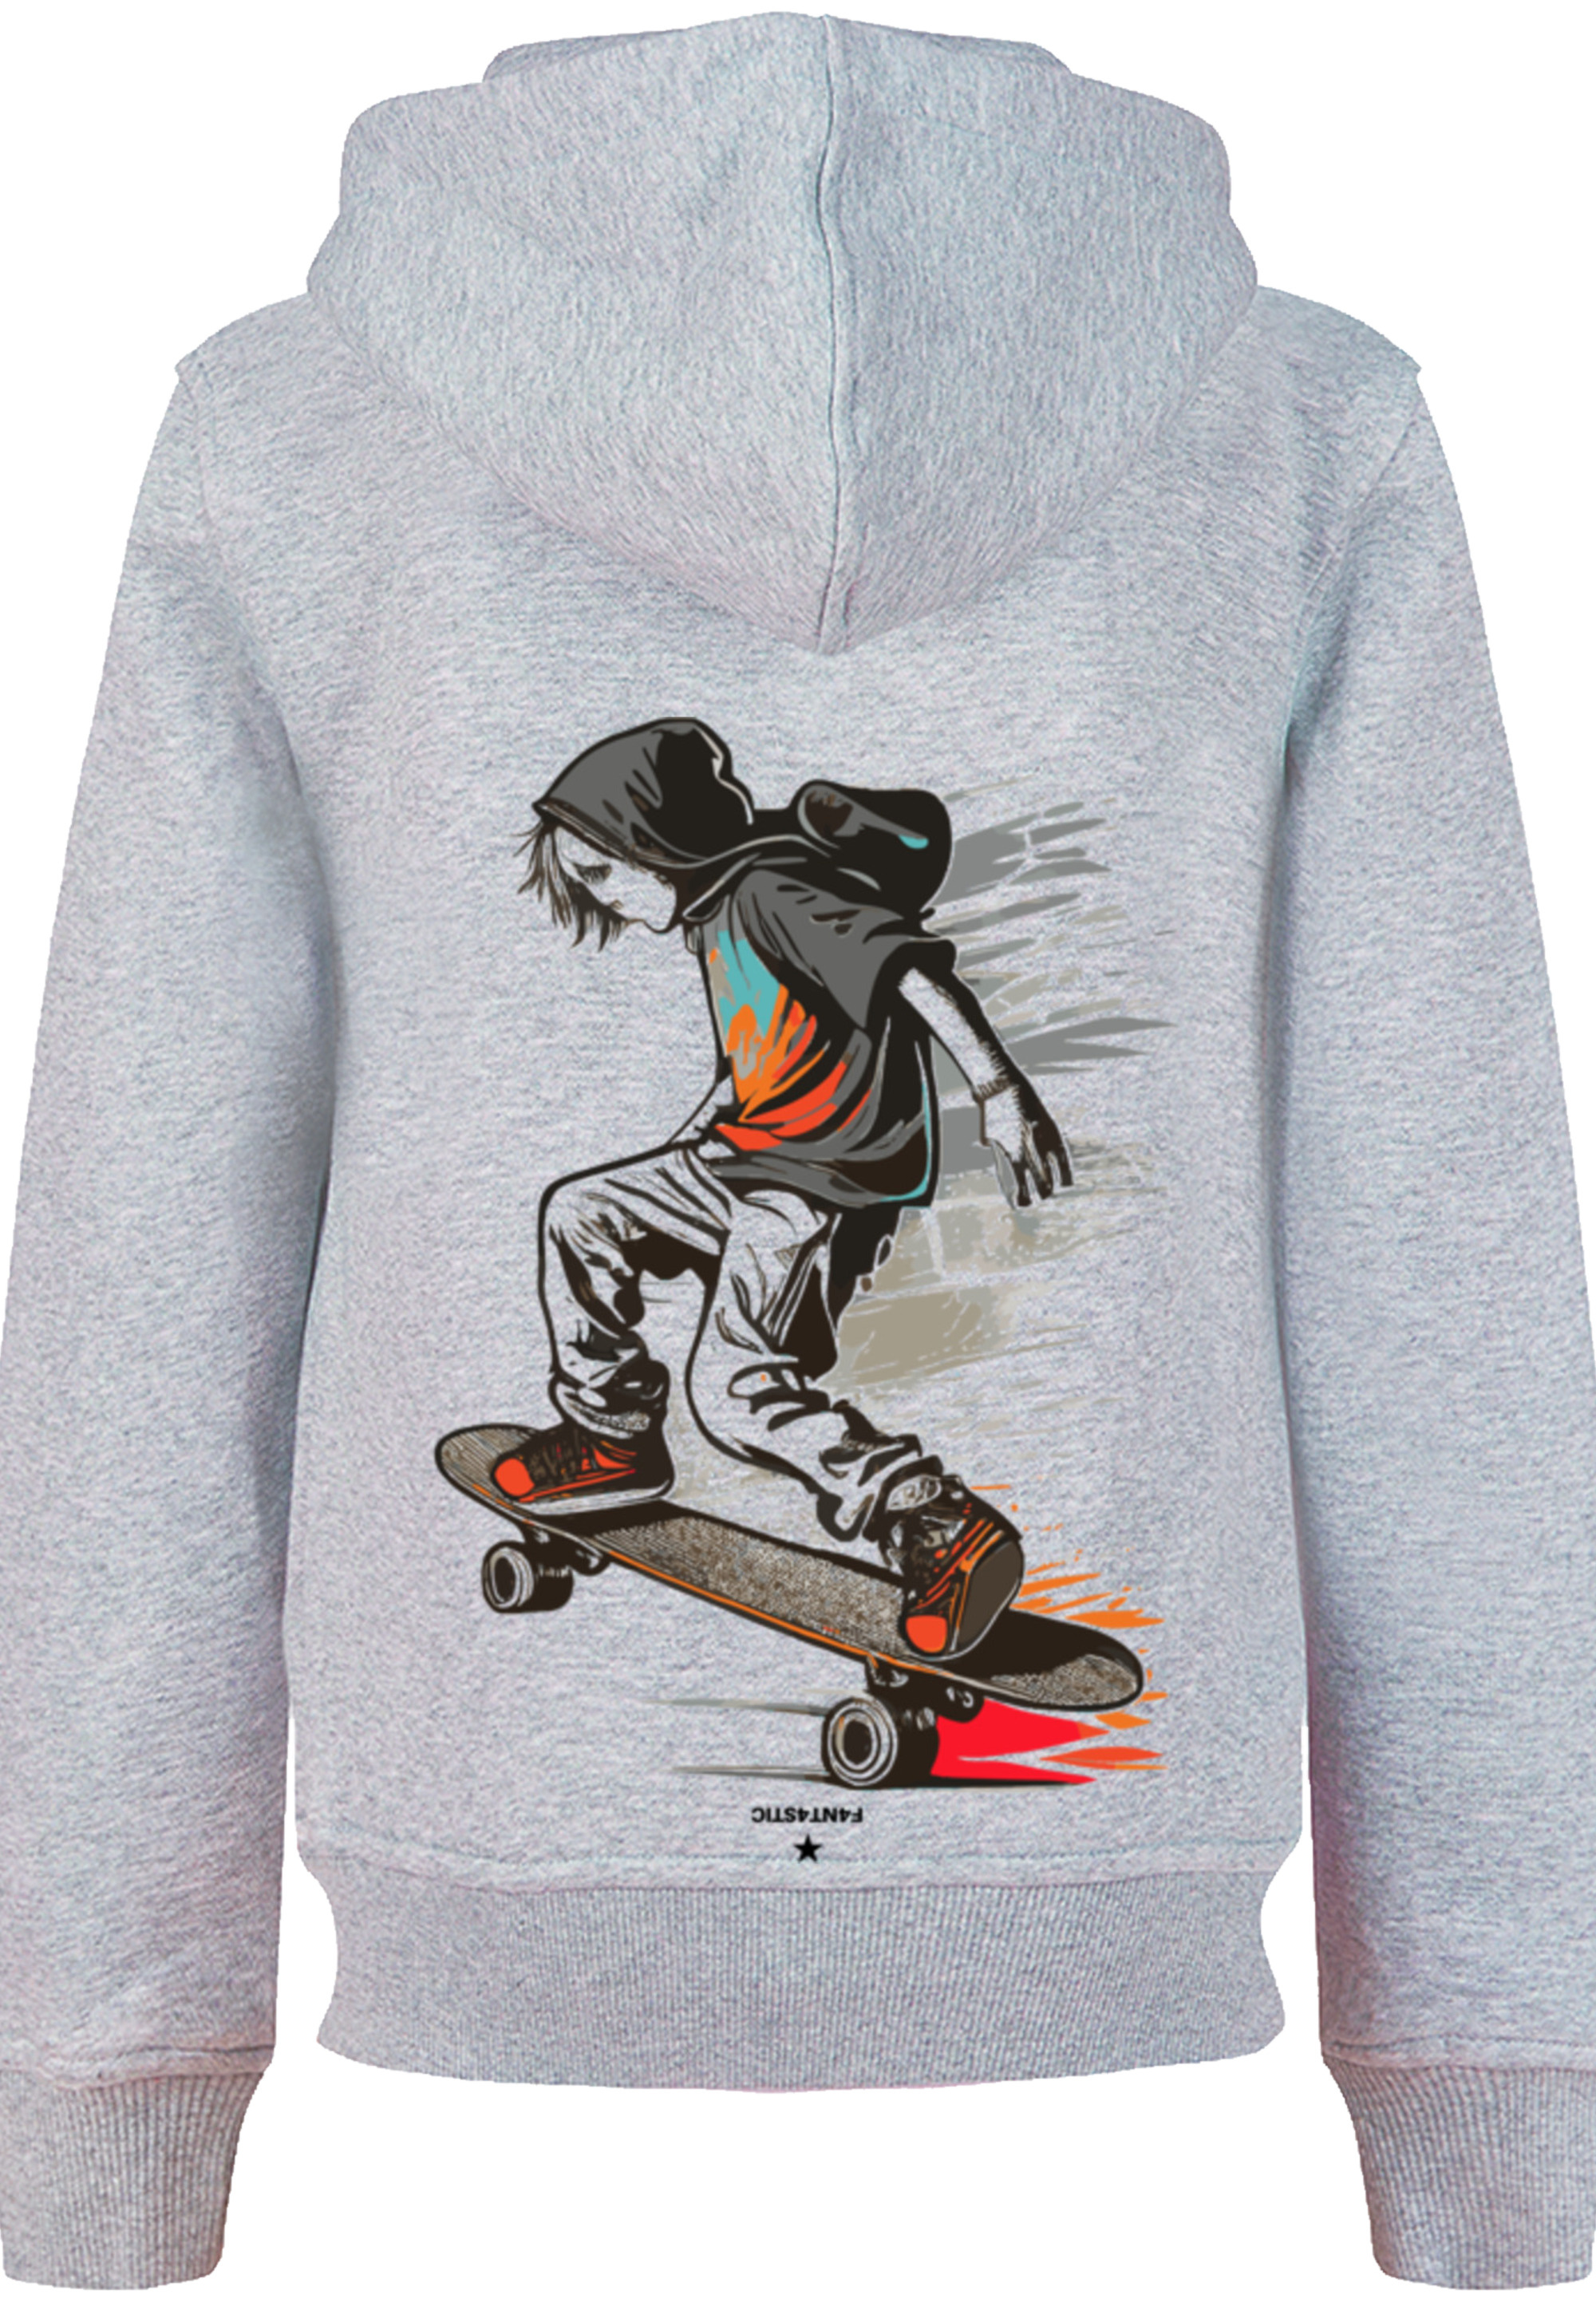 Пуловер F4NT4STIC Hoodie Skateboarder, цвет grau meliert